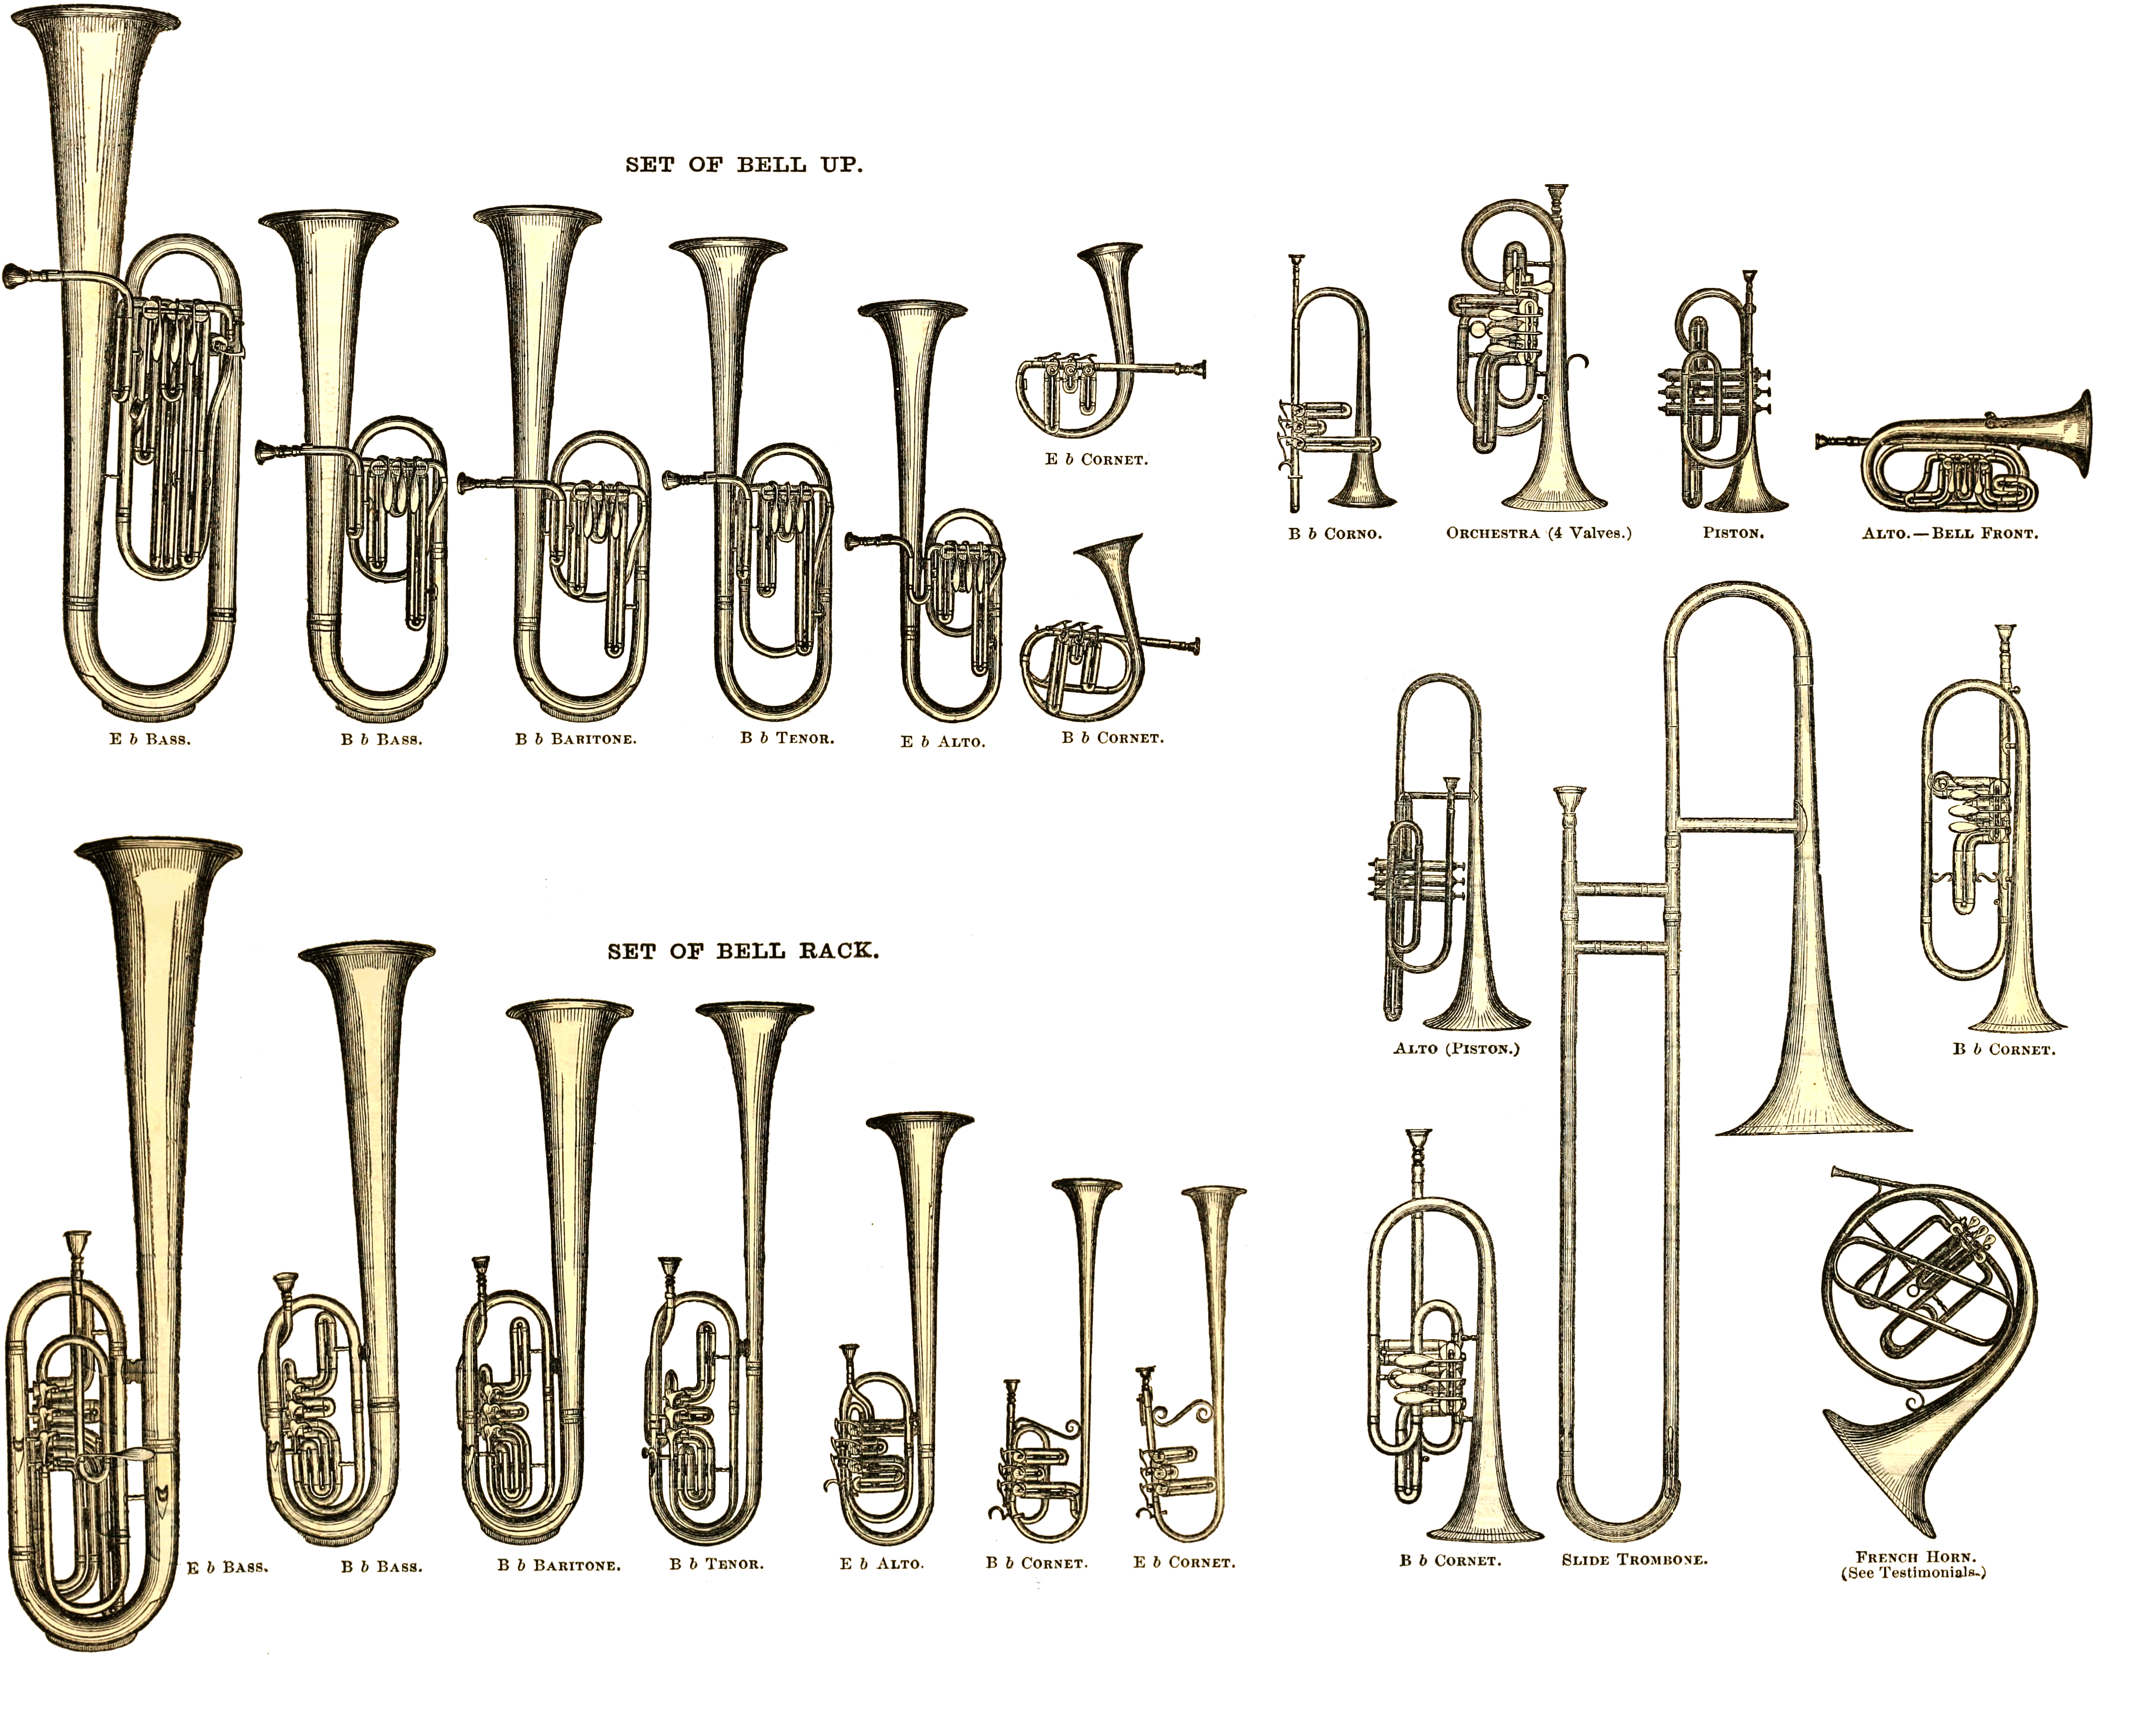 Trompettes - Instruments à vent - Instruments de musique